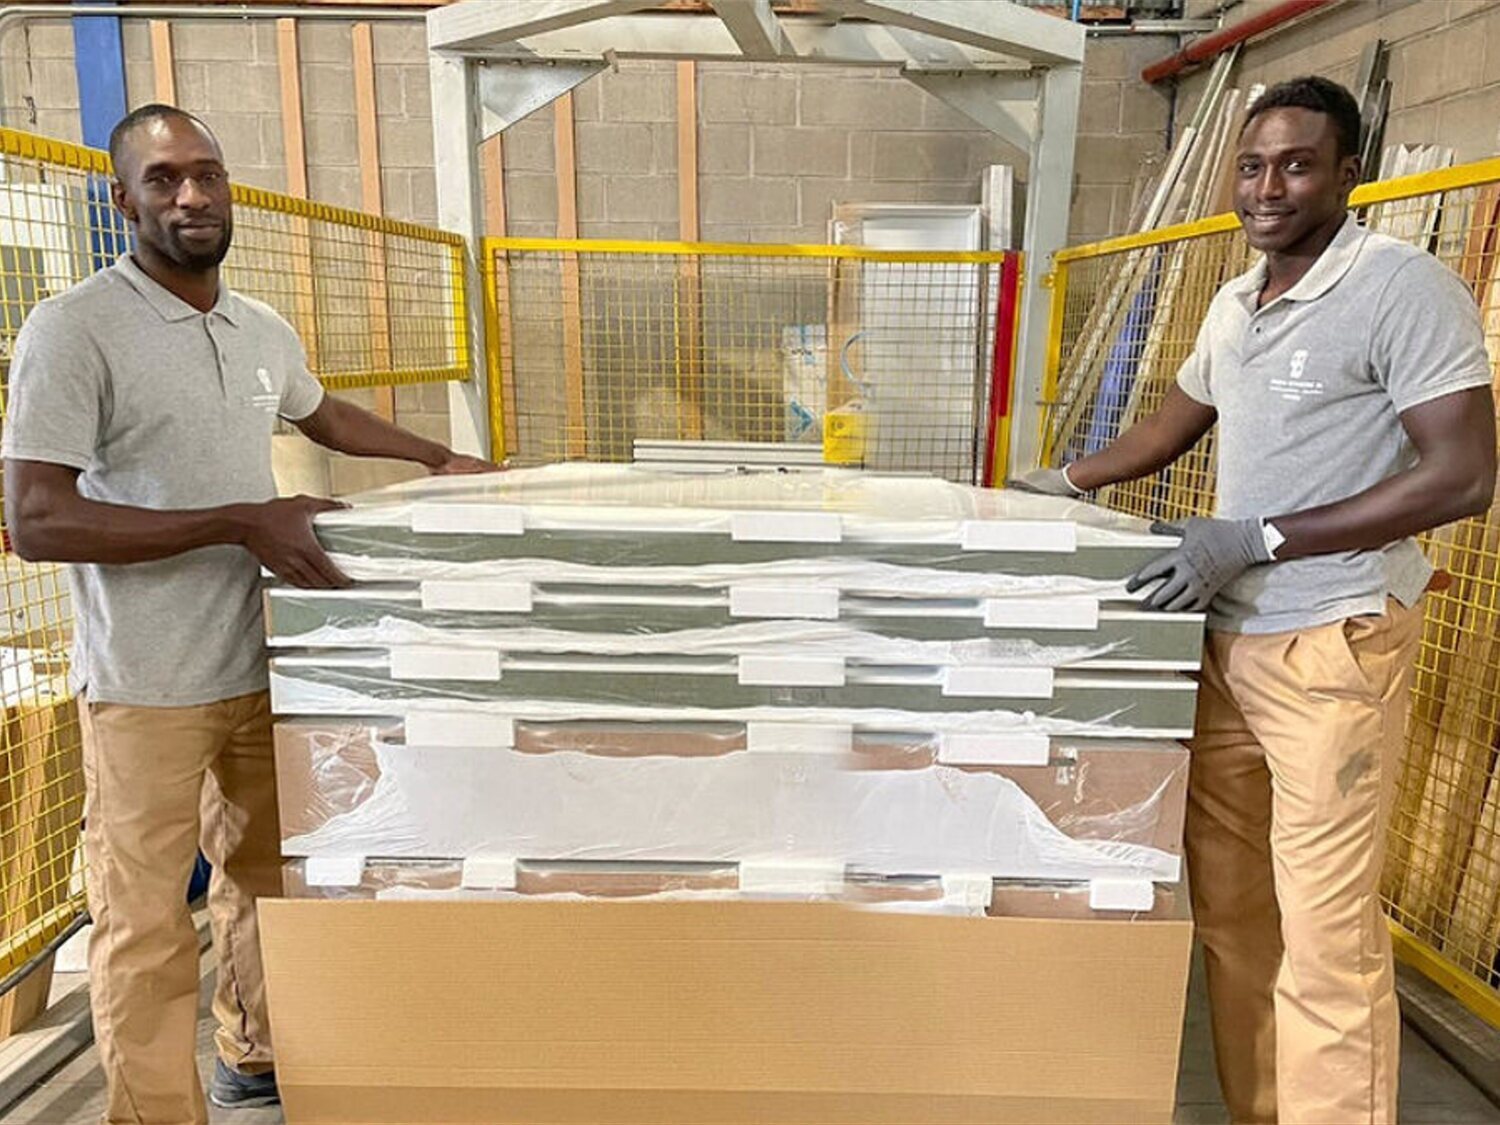 Ibrahima y Magatte, los dos senegaleses que ayudaron a Samuel, consiguen trabajo en una fábrica